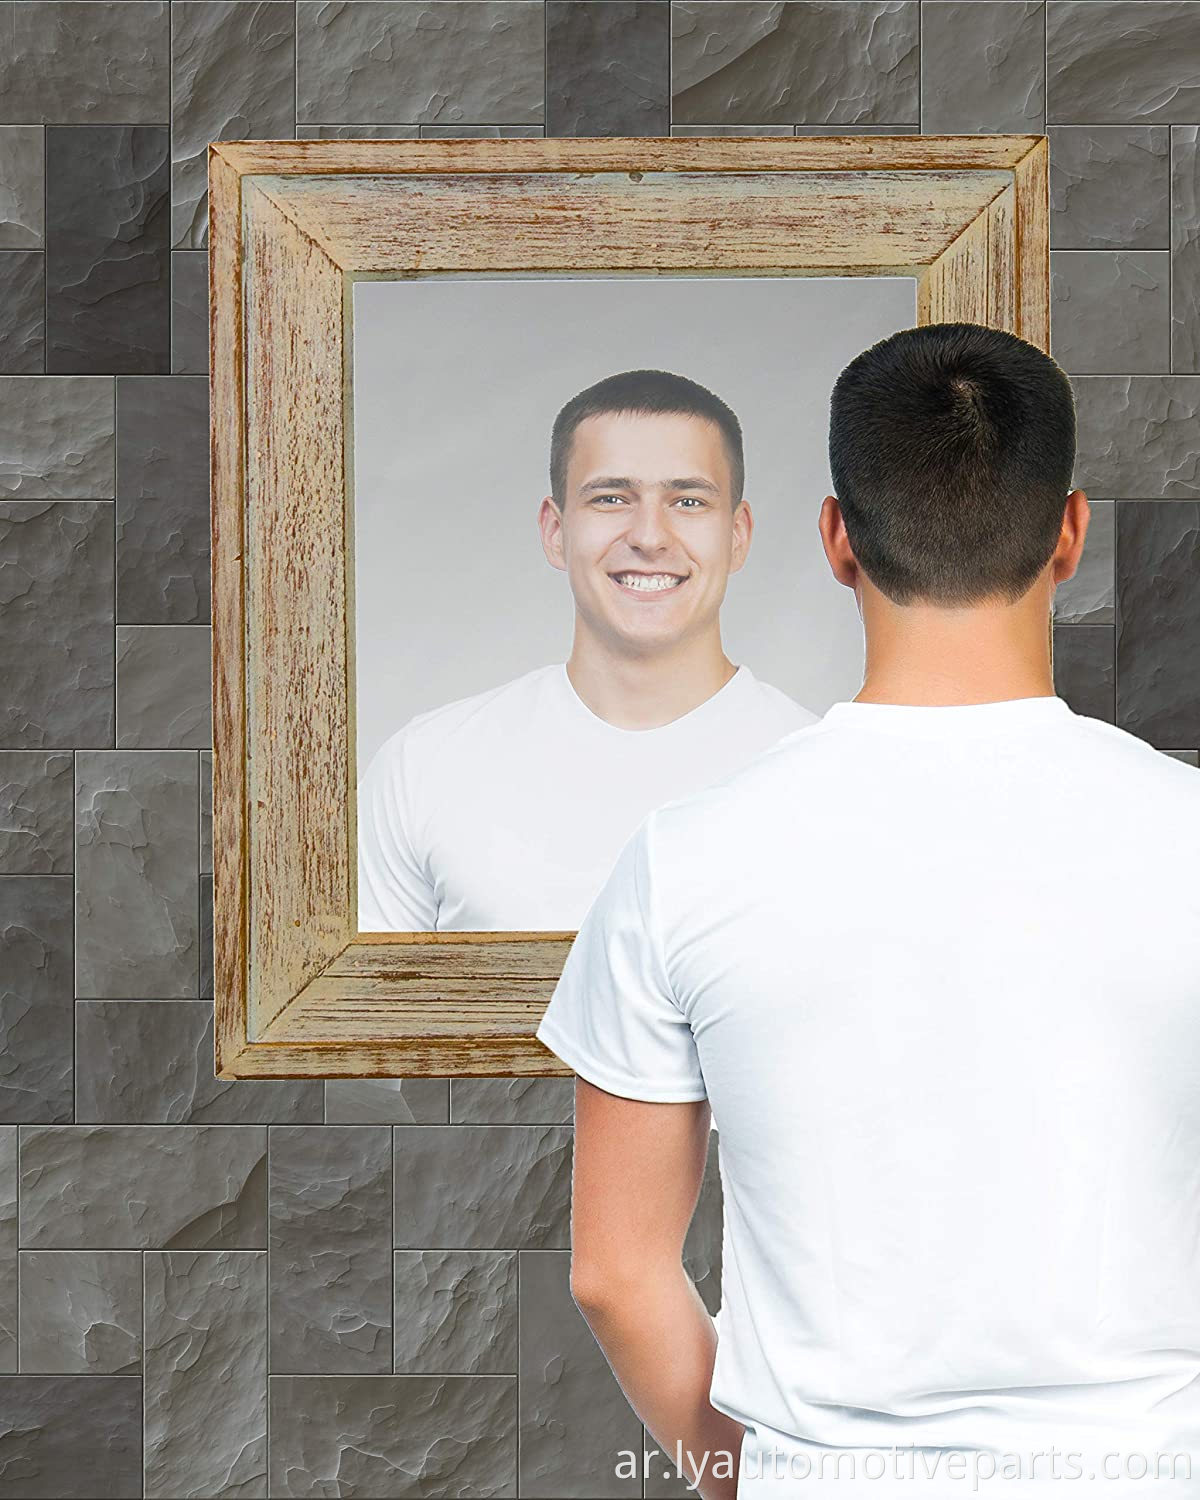 أوراق المرآة المرنة زخرفية لاصقة من البلاط المرآة البلاستيكية ملصقات غير زجاجية للسيارة مرآة الرؤية الخلفية (10*7inch)